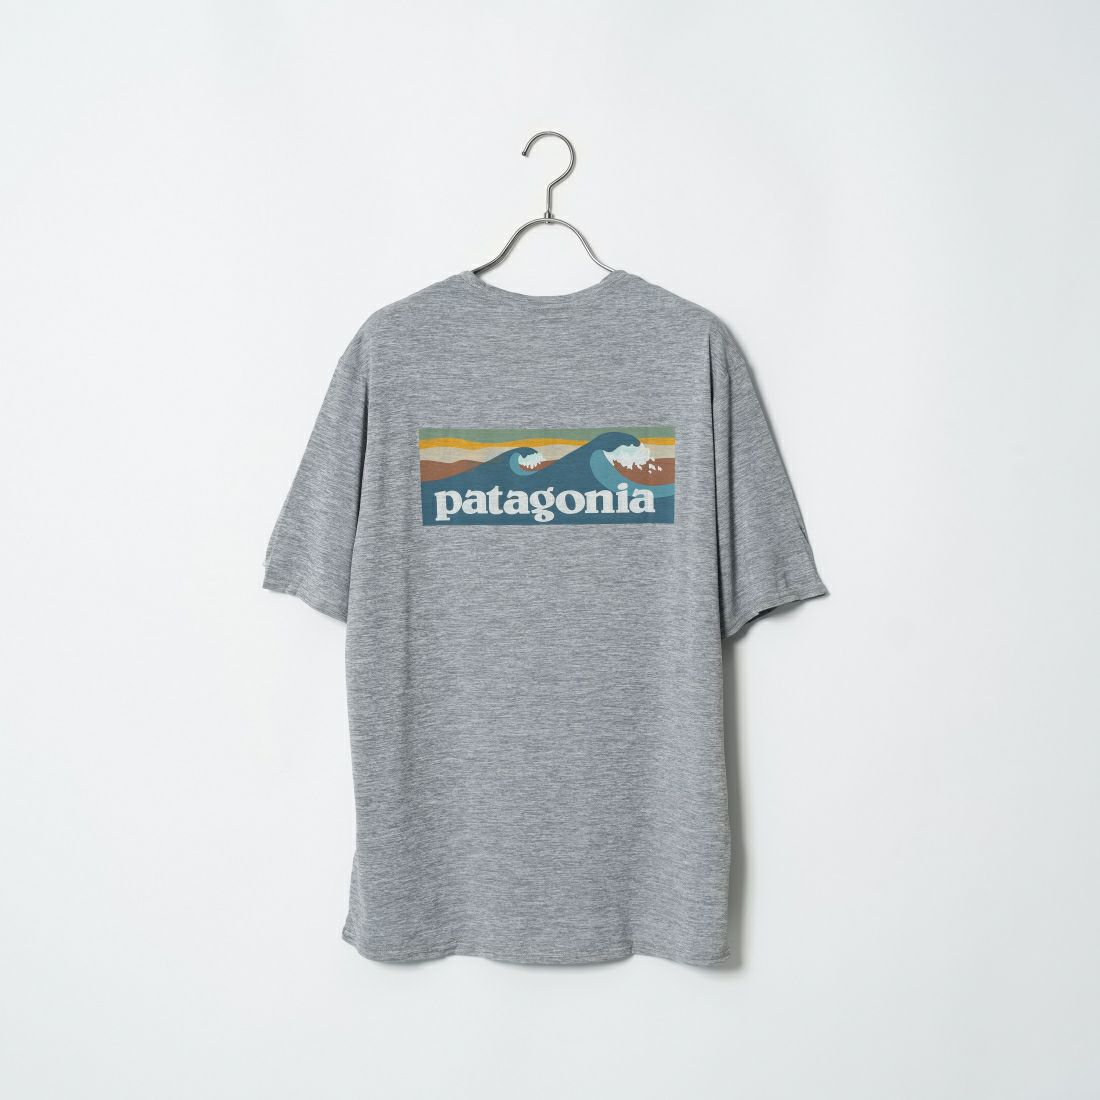 patagonia [パタゴニア] メンズ キャプリーン クールデイリー グラフィックTシャツ [45355]